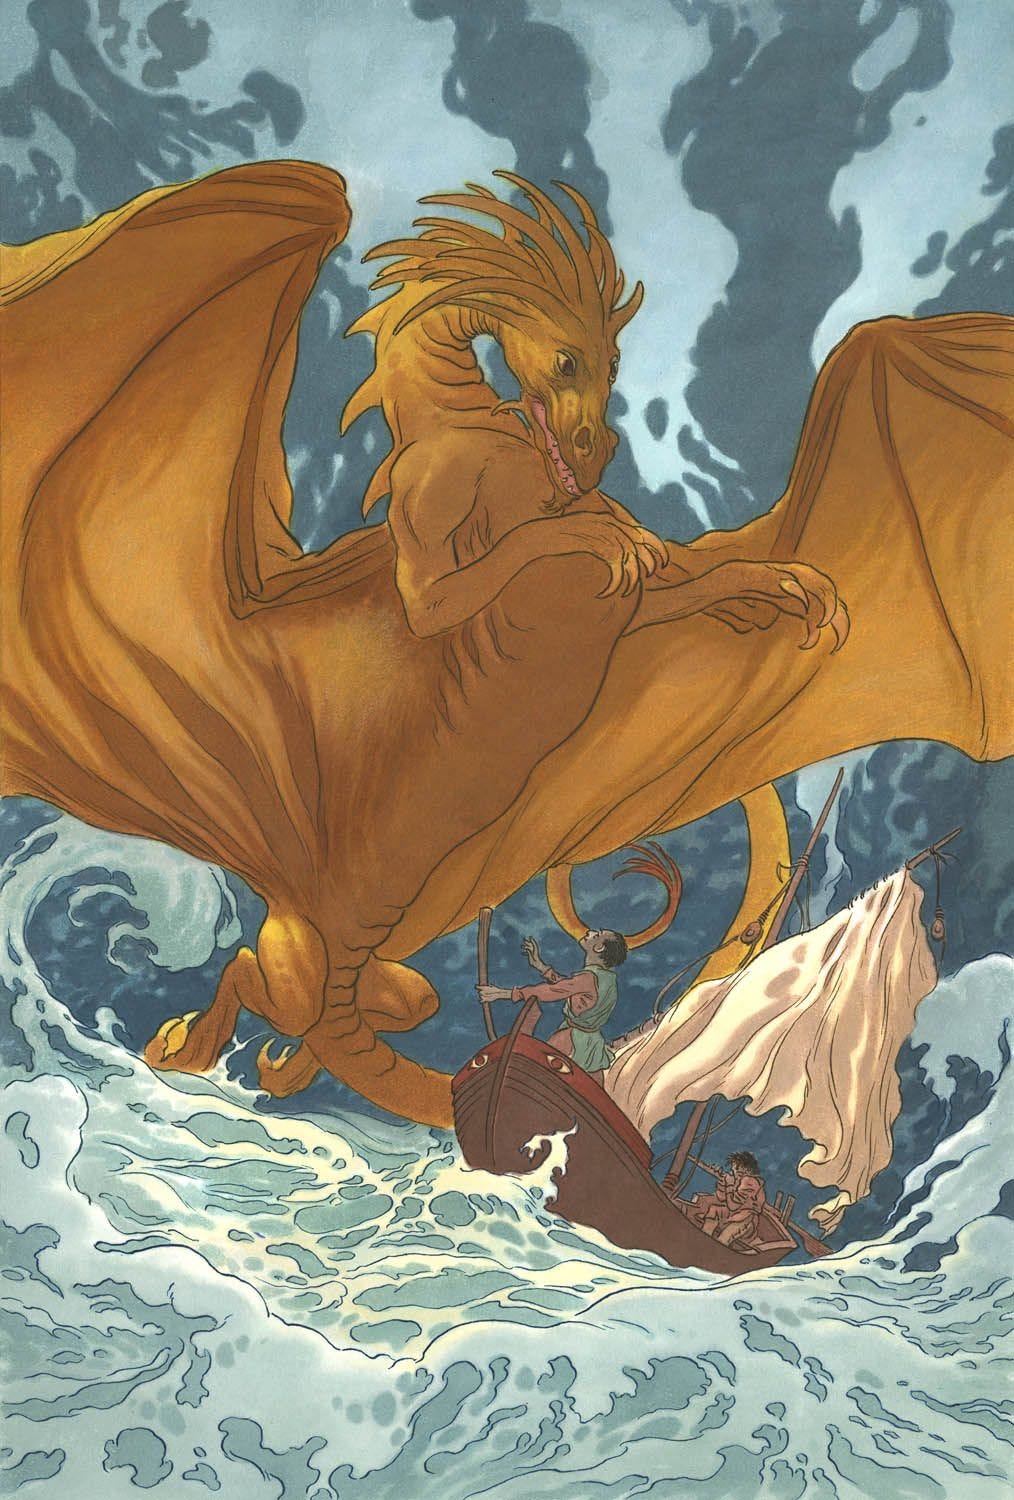 Illustrazione a colori: un drago arancione si staglia su una piccola barca di legno con a bordo due persone di pelle scura, mentre il mare è in tempesta